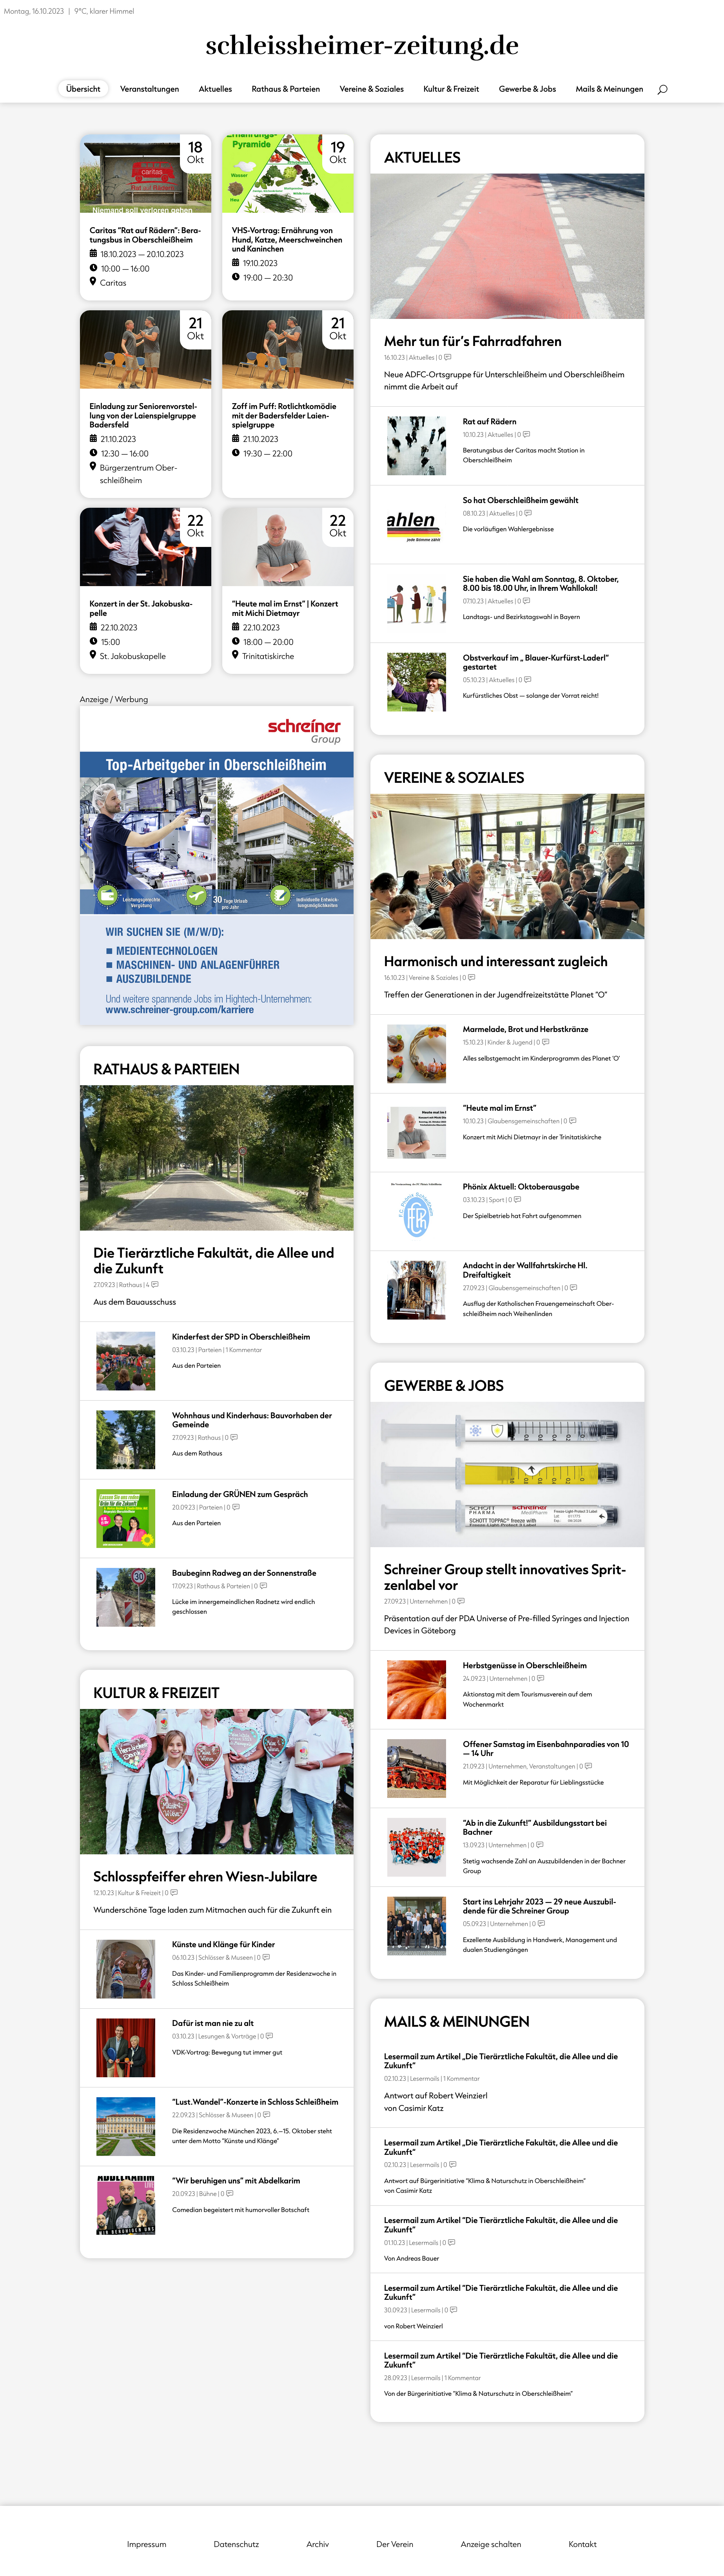 Screenshot der Websiteschleissheimer-zeitung.de. slick-img